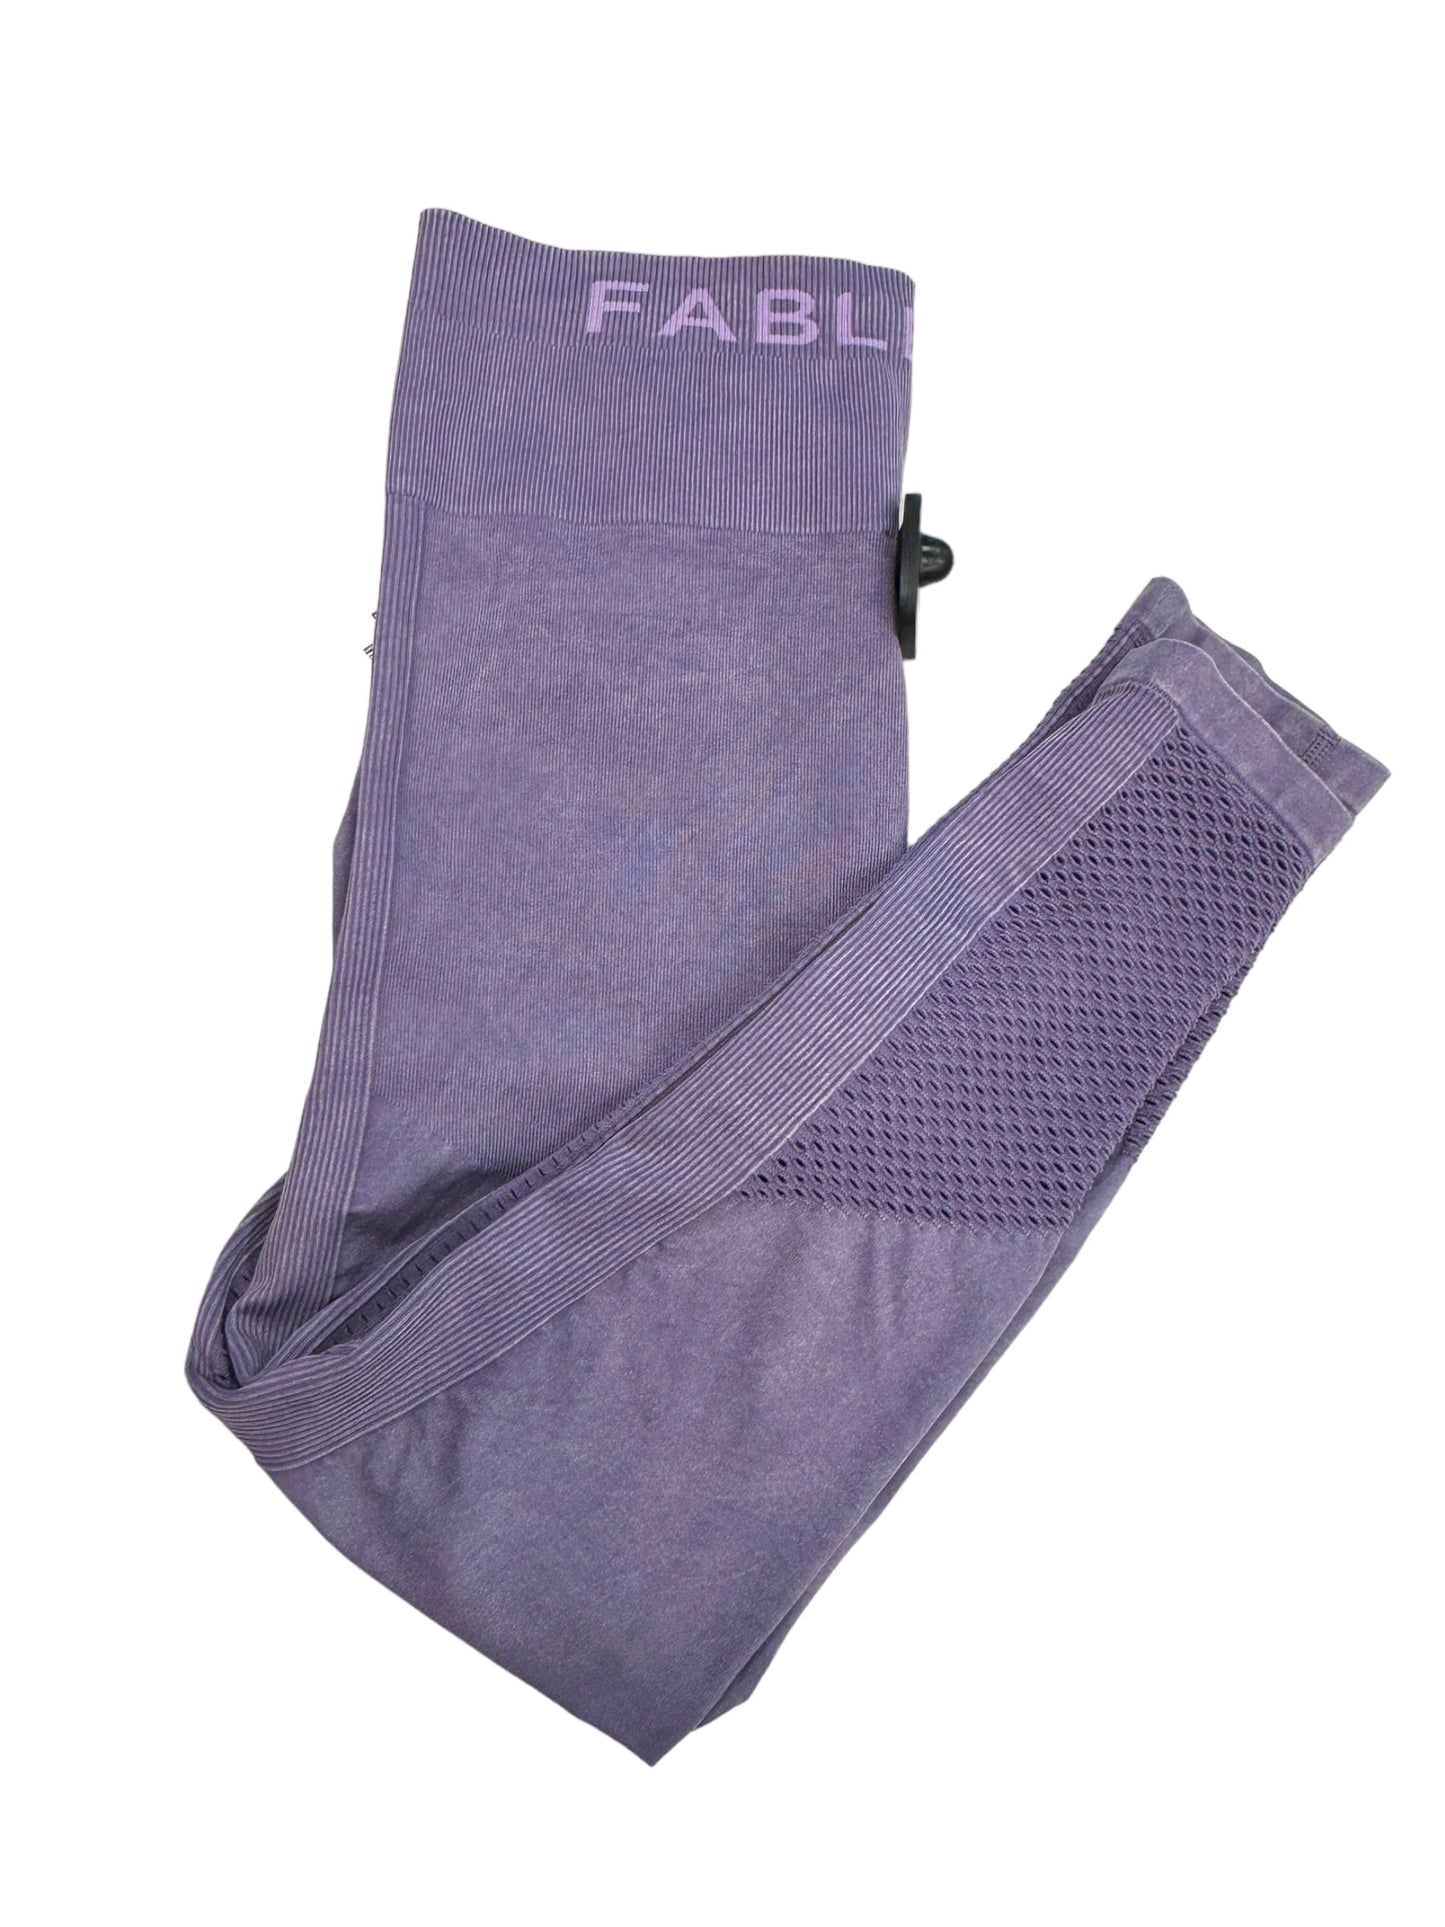 Purple Athletic Leggings Fabletics, Size M